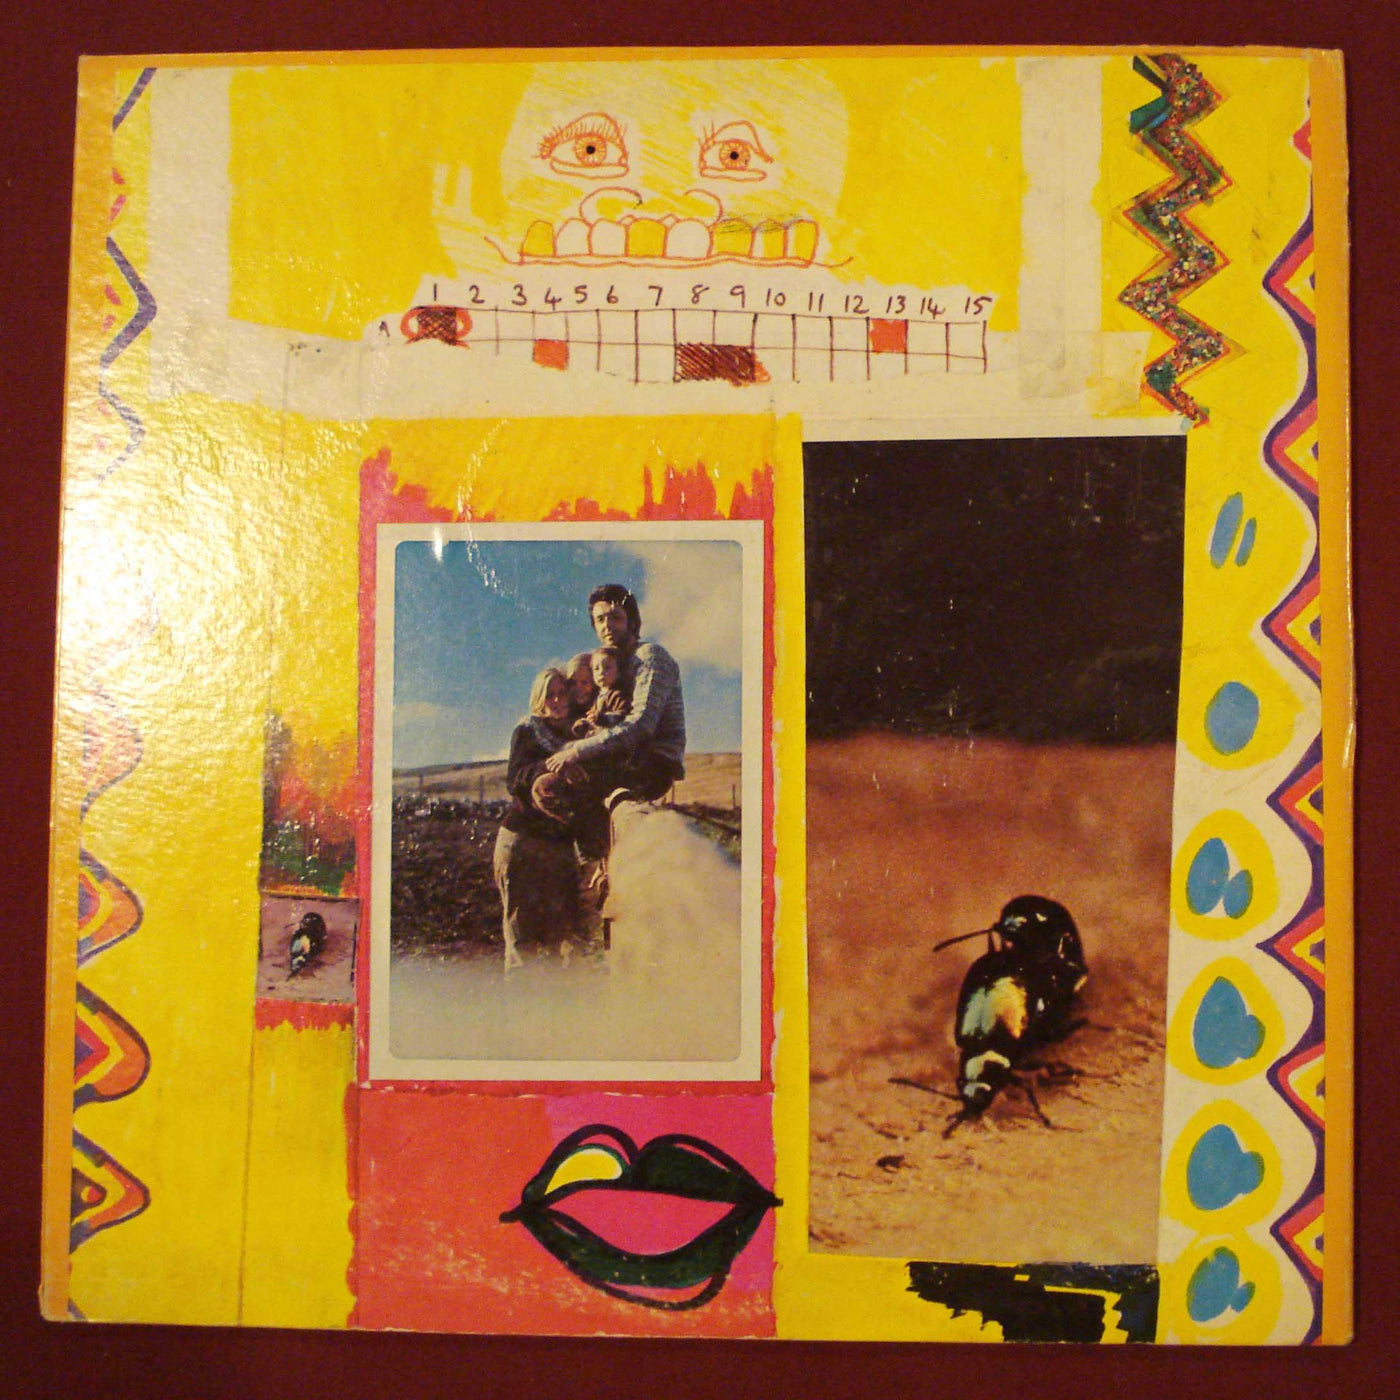 Paul & Linda McCartney - Ram (1971) Vinyl LP 33rpm SMAS-3375